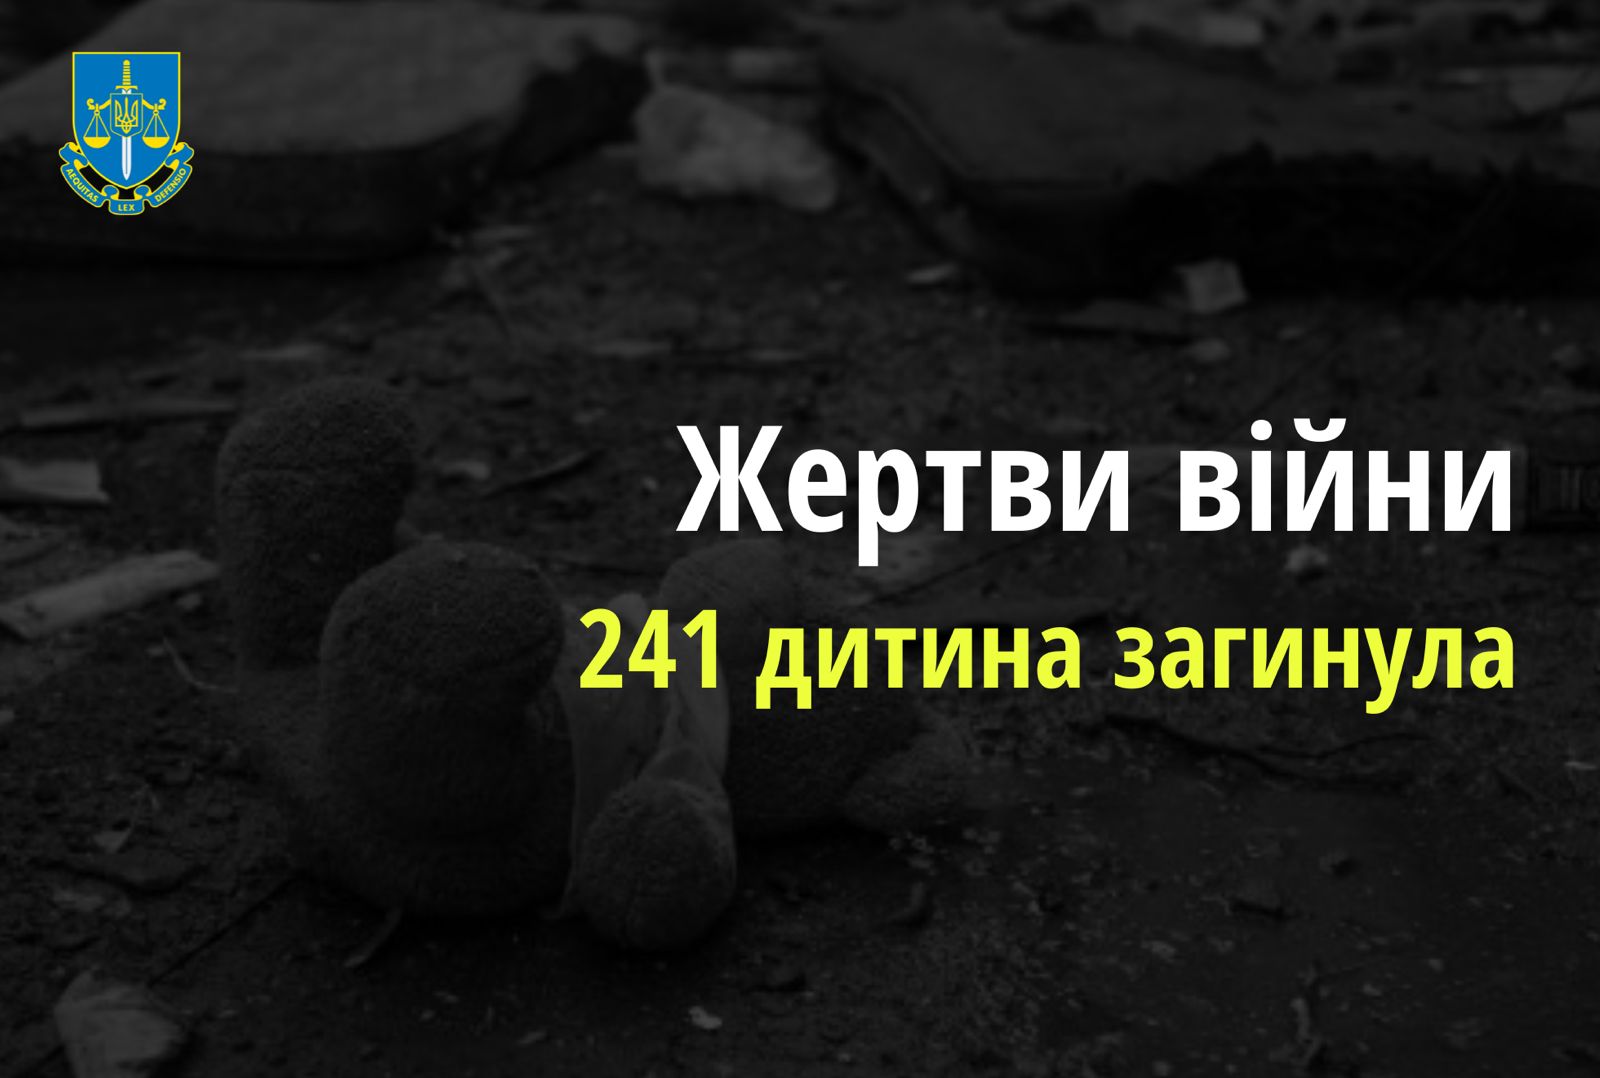 Ювенальні прокурори: внаслідок збройної агресії РФ в Україні загинула 241 дитина